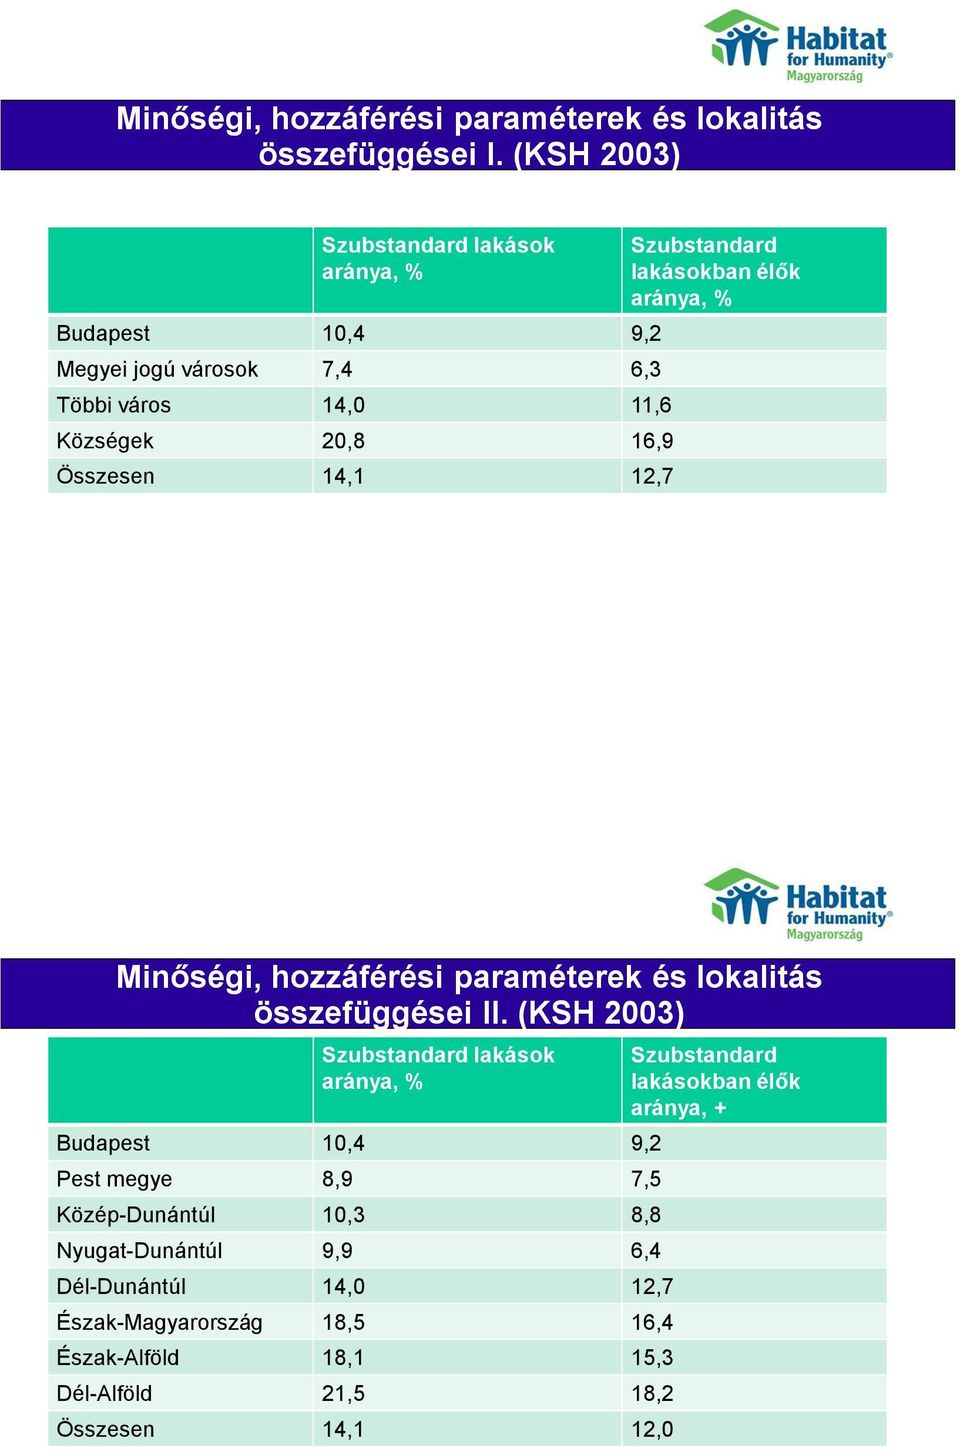 Szubstandard lakásokban élők aránya, % Minőségi, hozzáférési paraméterek és lokalitás összefüggései II.